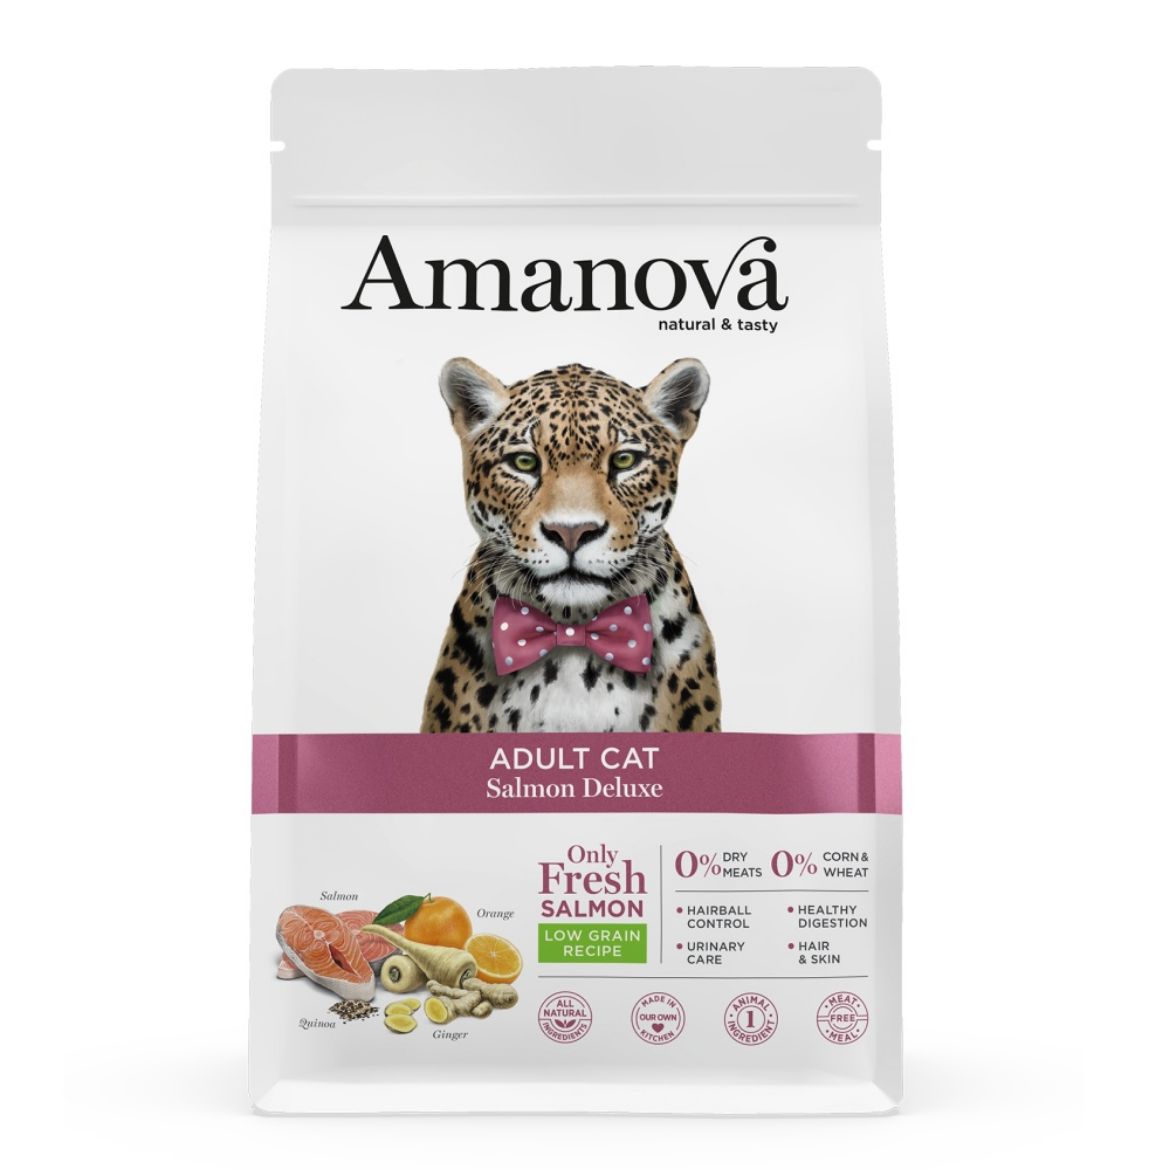 Obrázek z Amanova Cat Adult Salmon & Quinoa LG 6 kg  